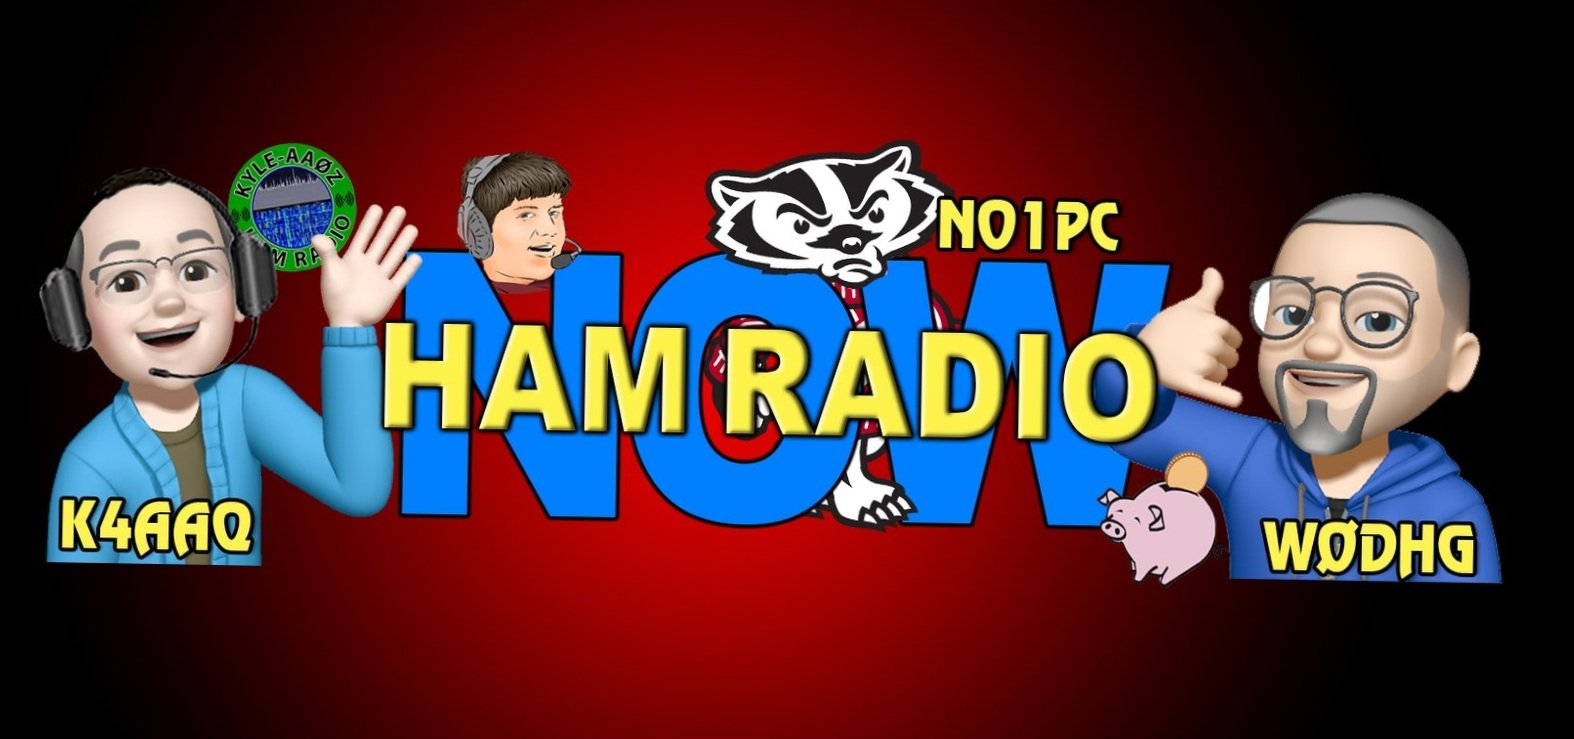 HamRadioNow